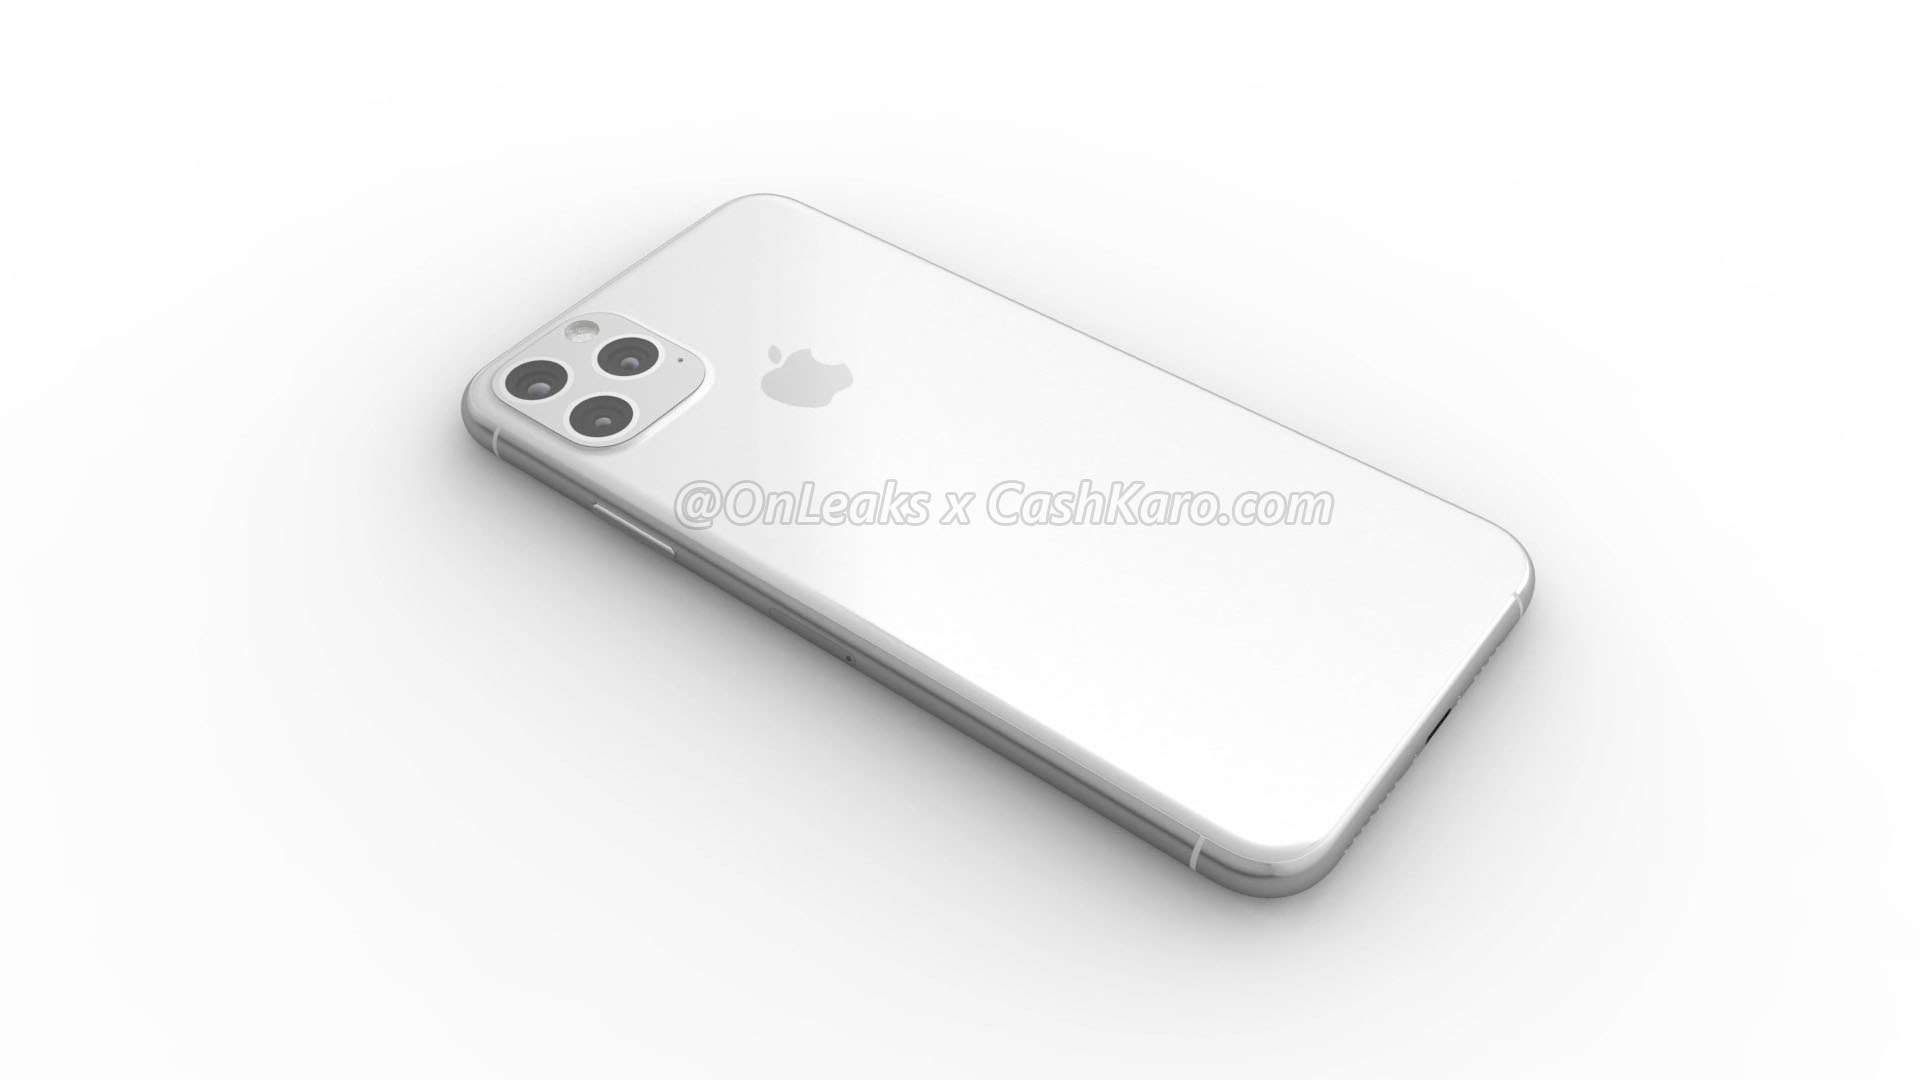 Apple iPhone 2019 Max rendery Onleaks plotki przecieki kiedy premiera